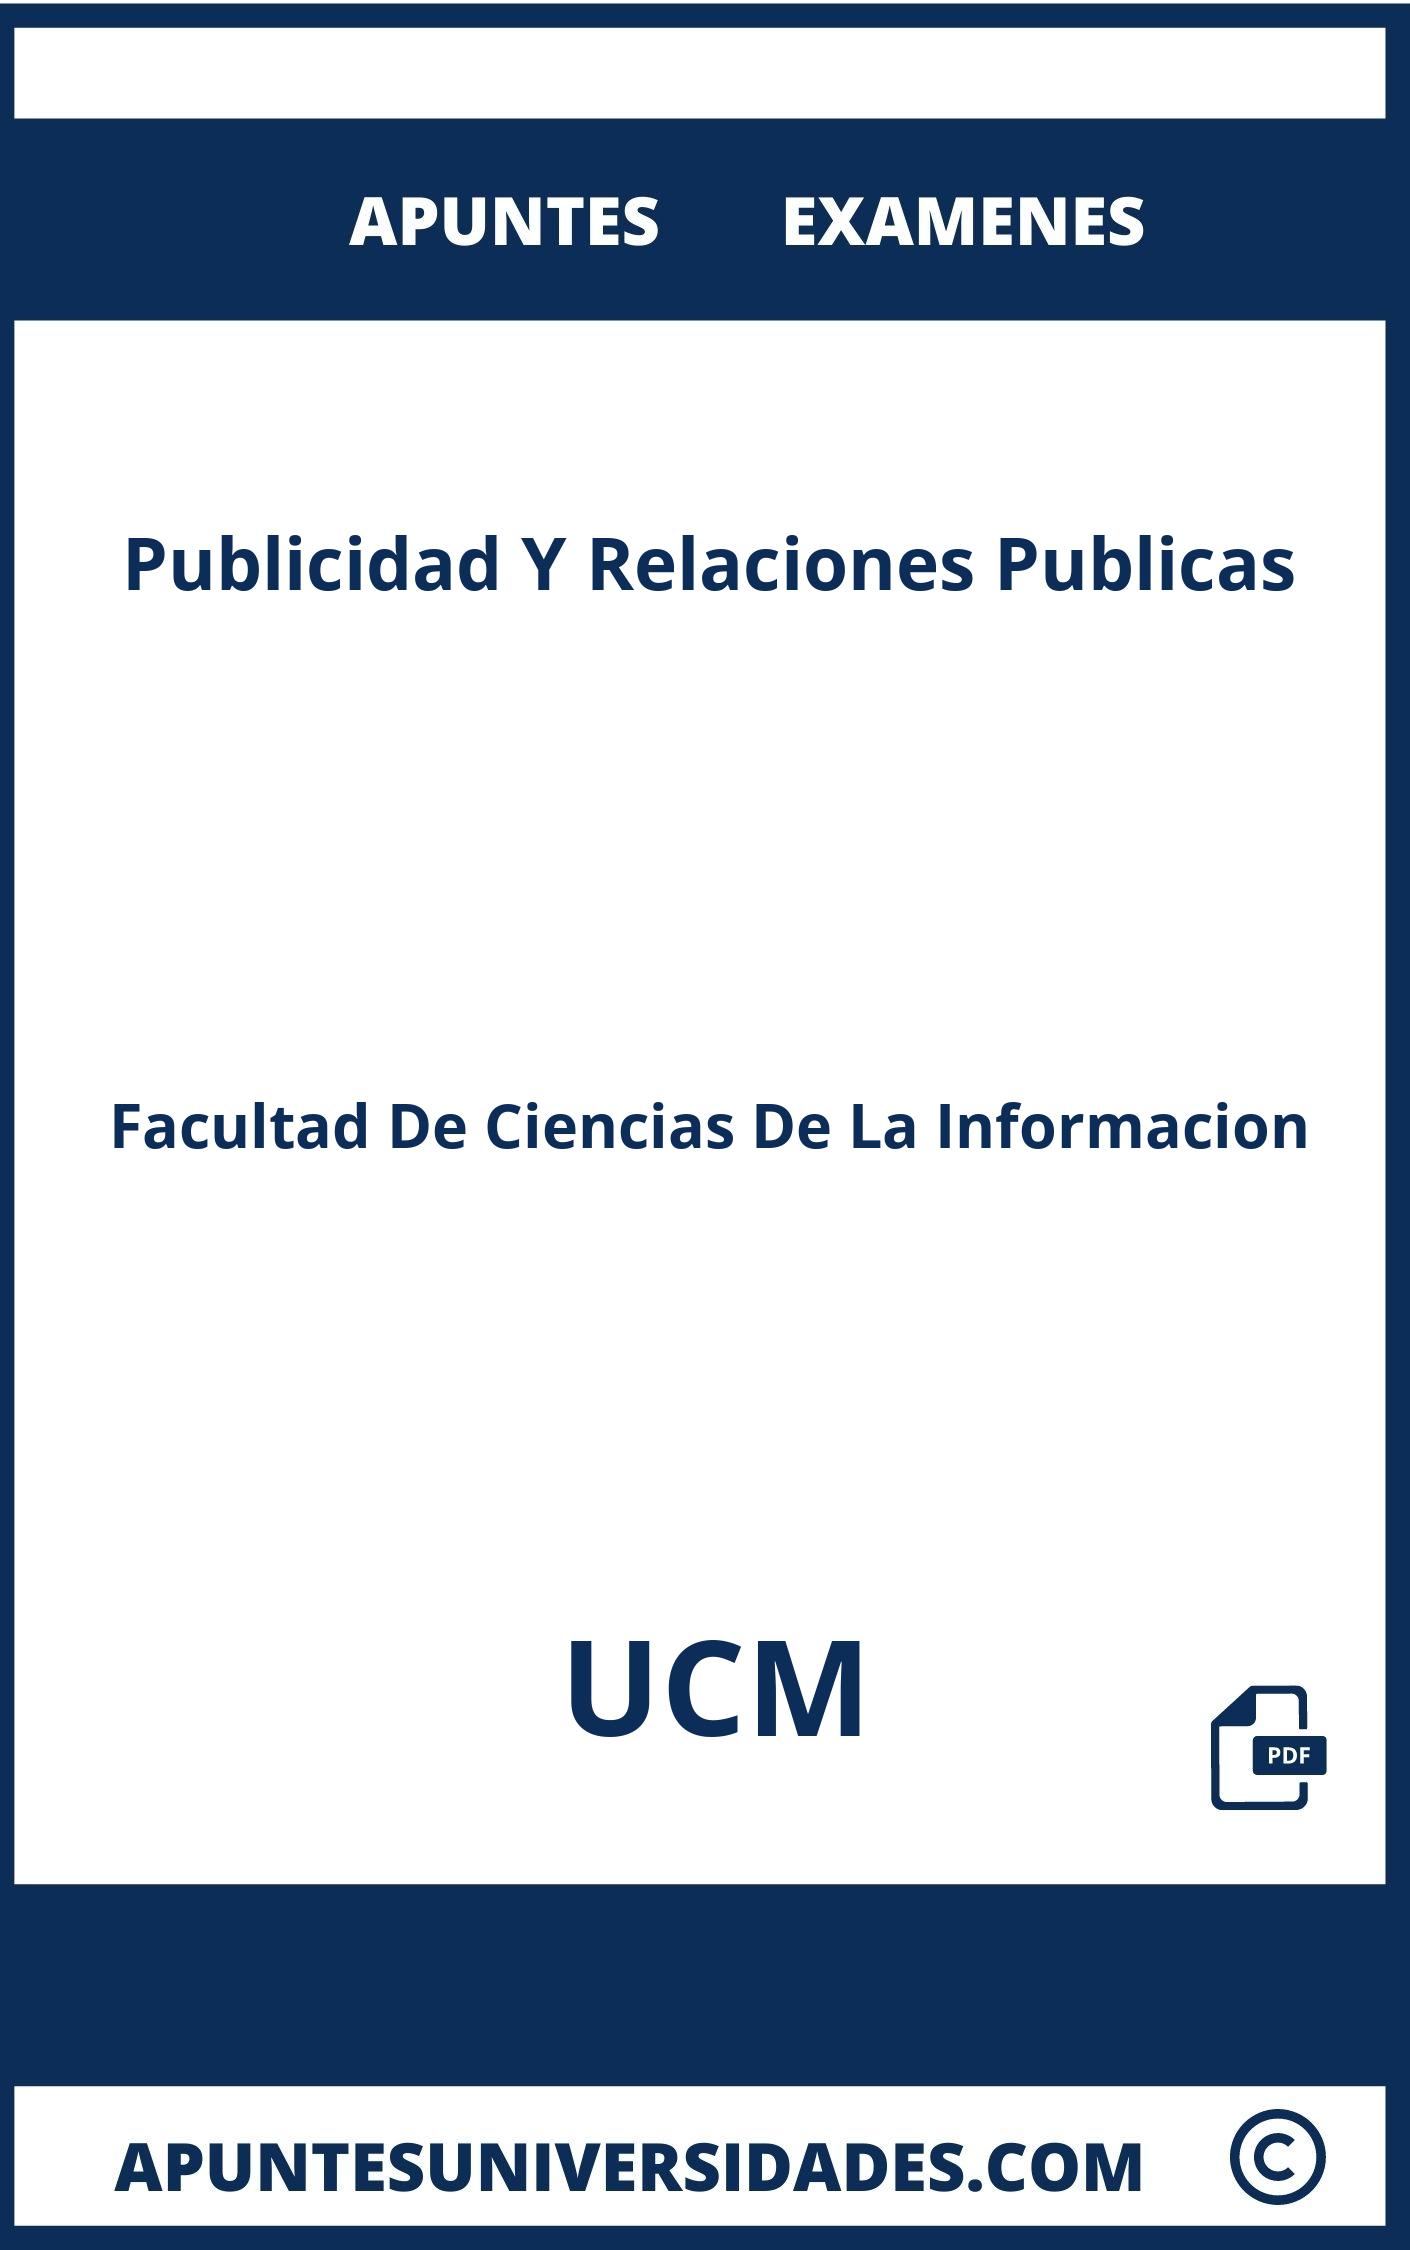 Examenes Apuntes Publicidad Y Relaciones Publicas UCM